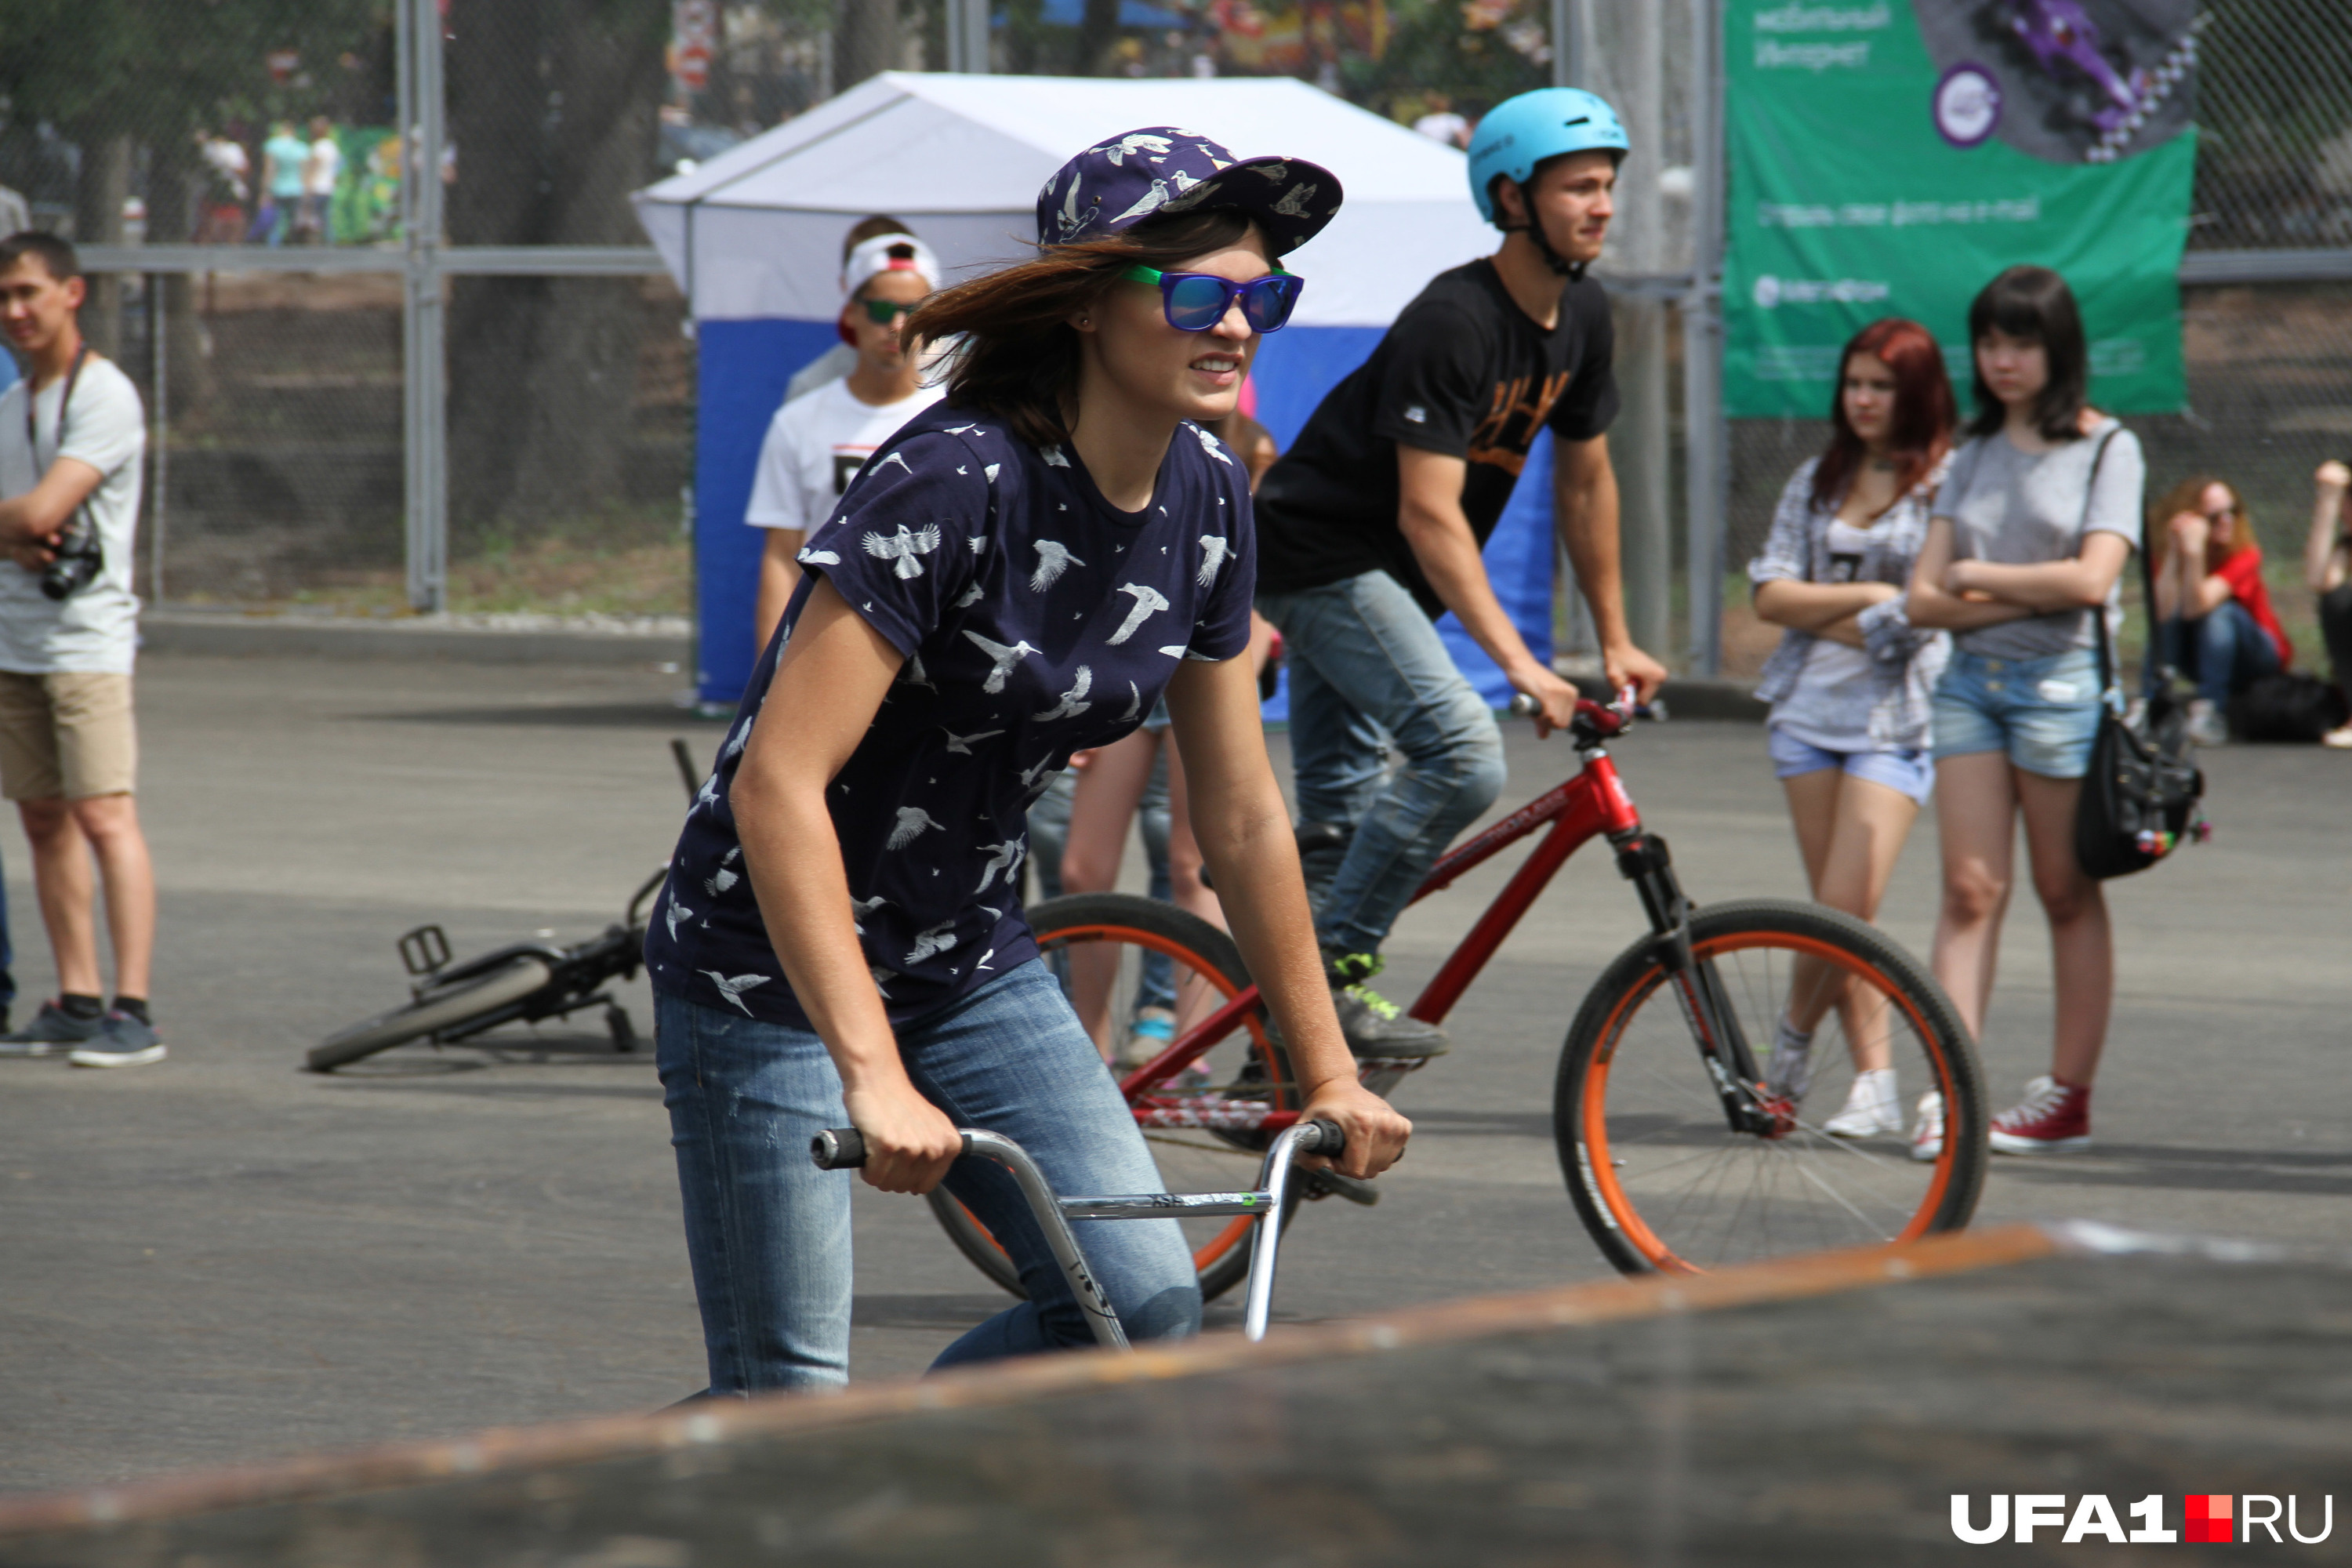 Велосипедистам в городе проще, чем роллерам и скейтбордистам: можно и улицы штурмовать, и пересеченную местность